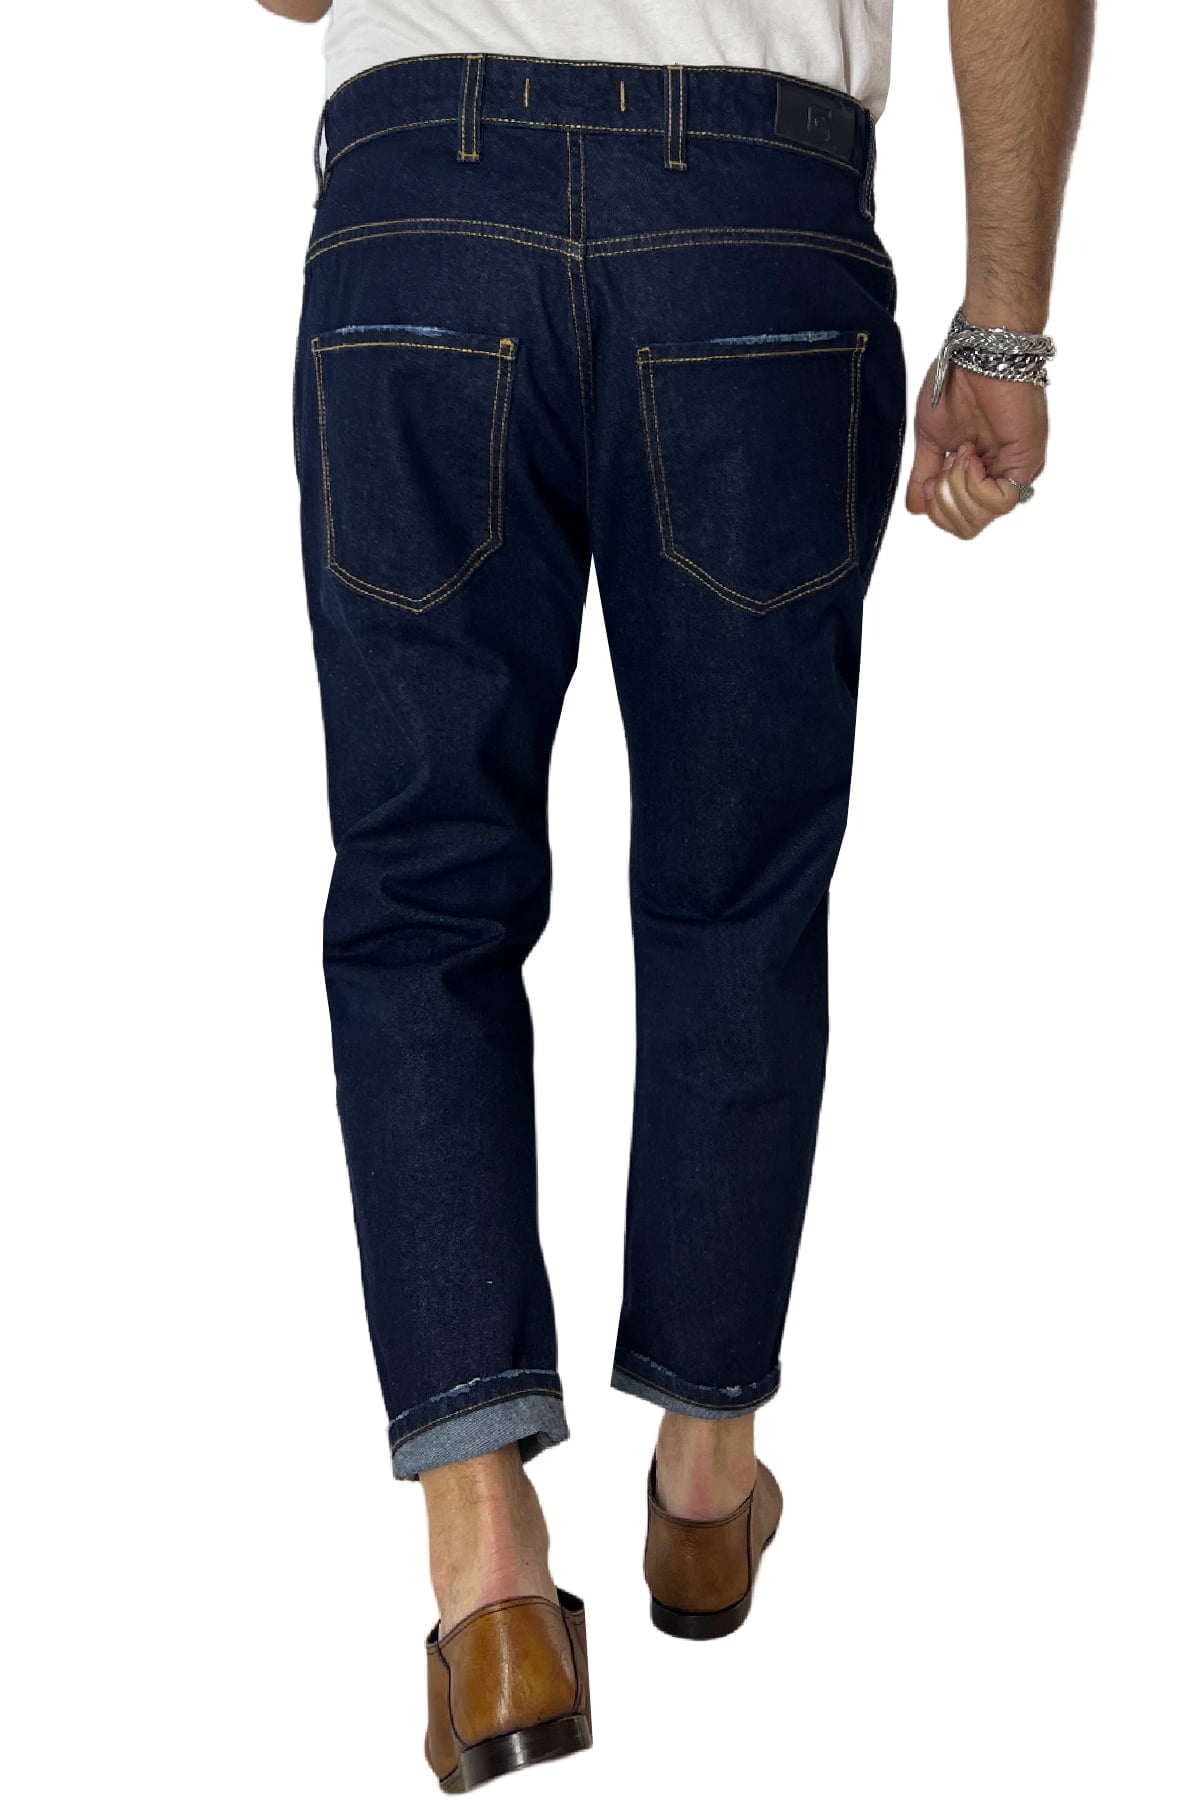 Jeans da uomo blu lavaggio zero modello 5 tasche regular fit made in italy